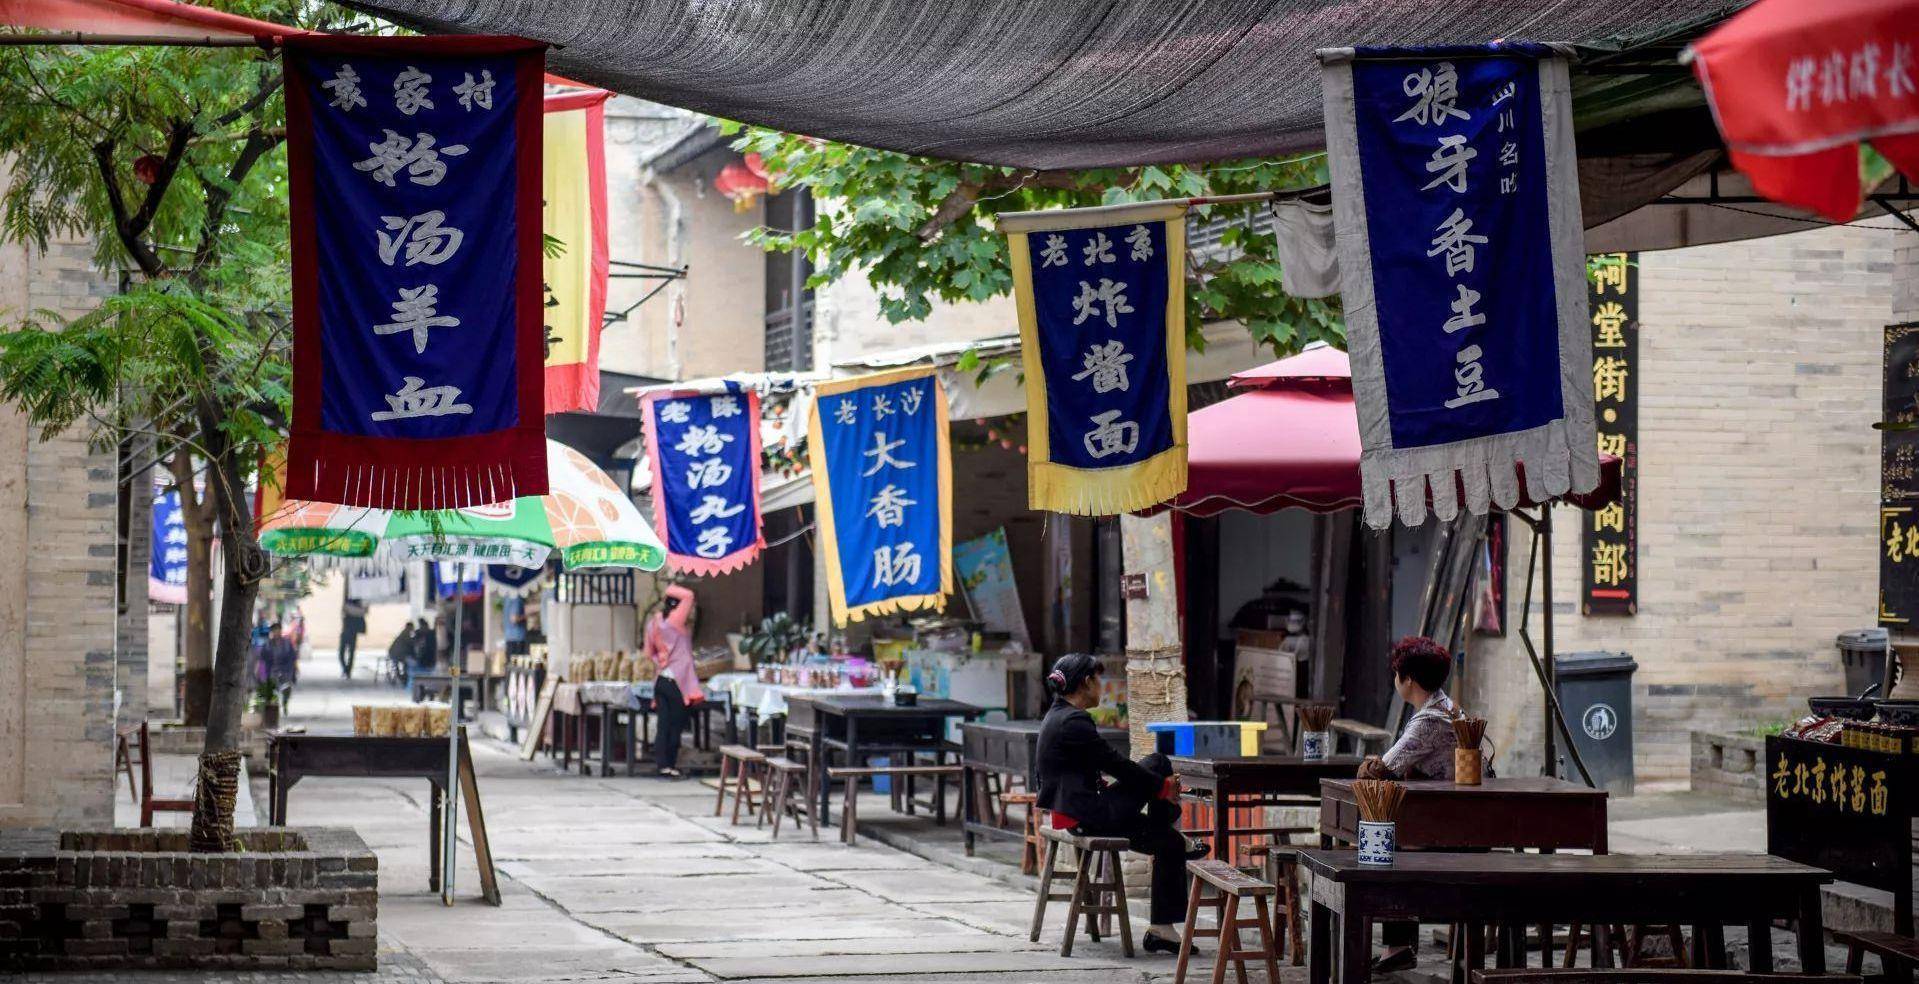 中国第一旅游网红村:20万元买点子,一年游客580万,年收入10亿